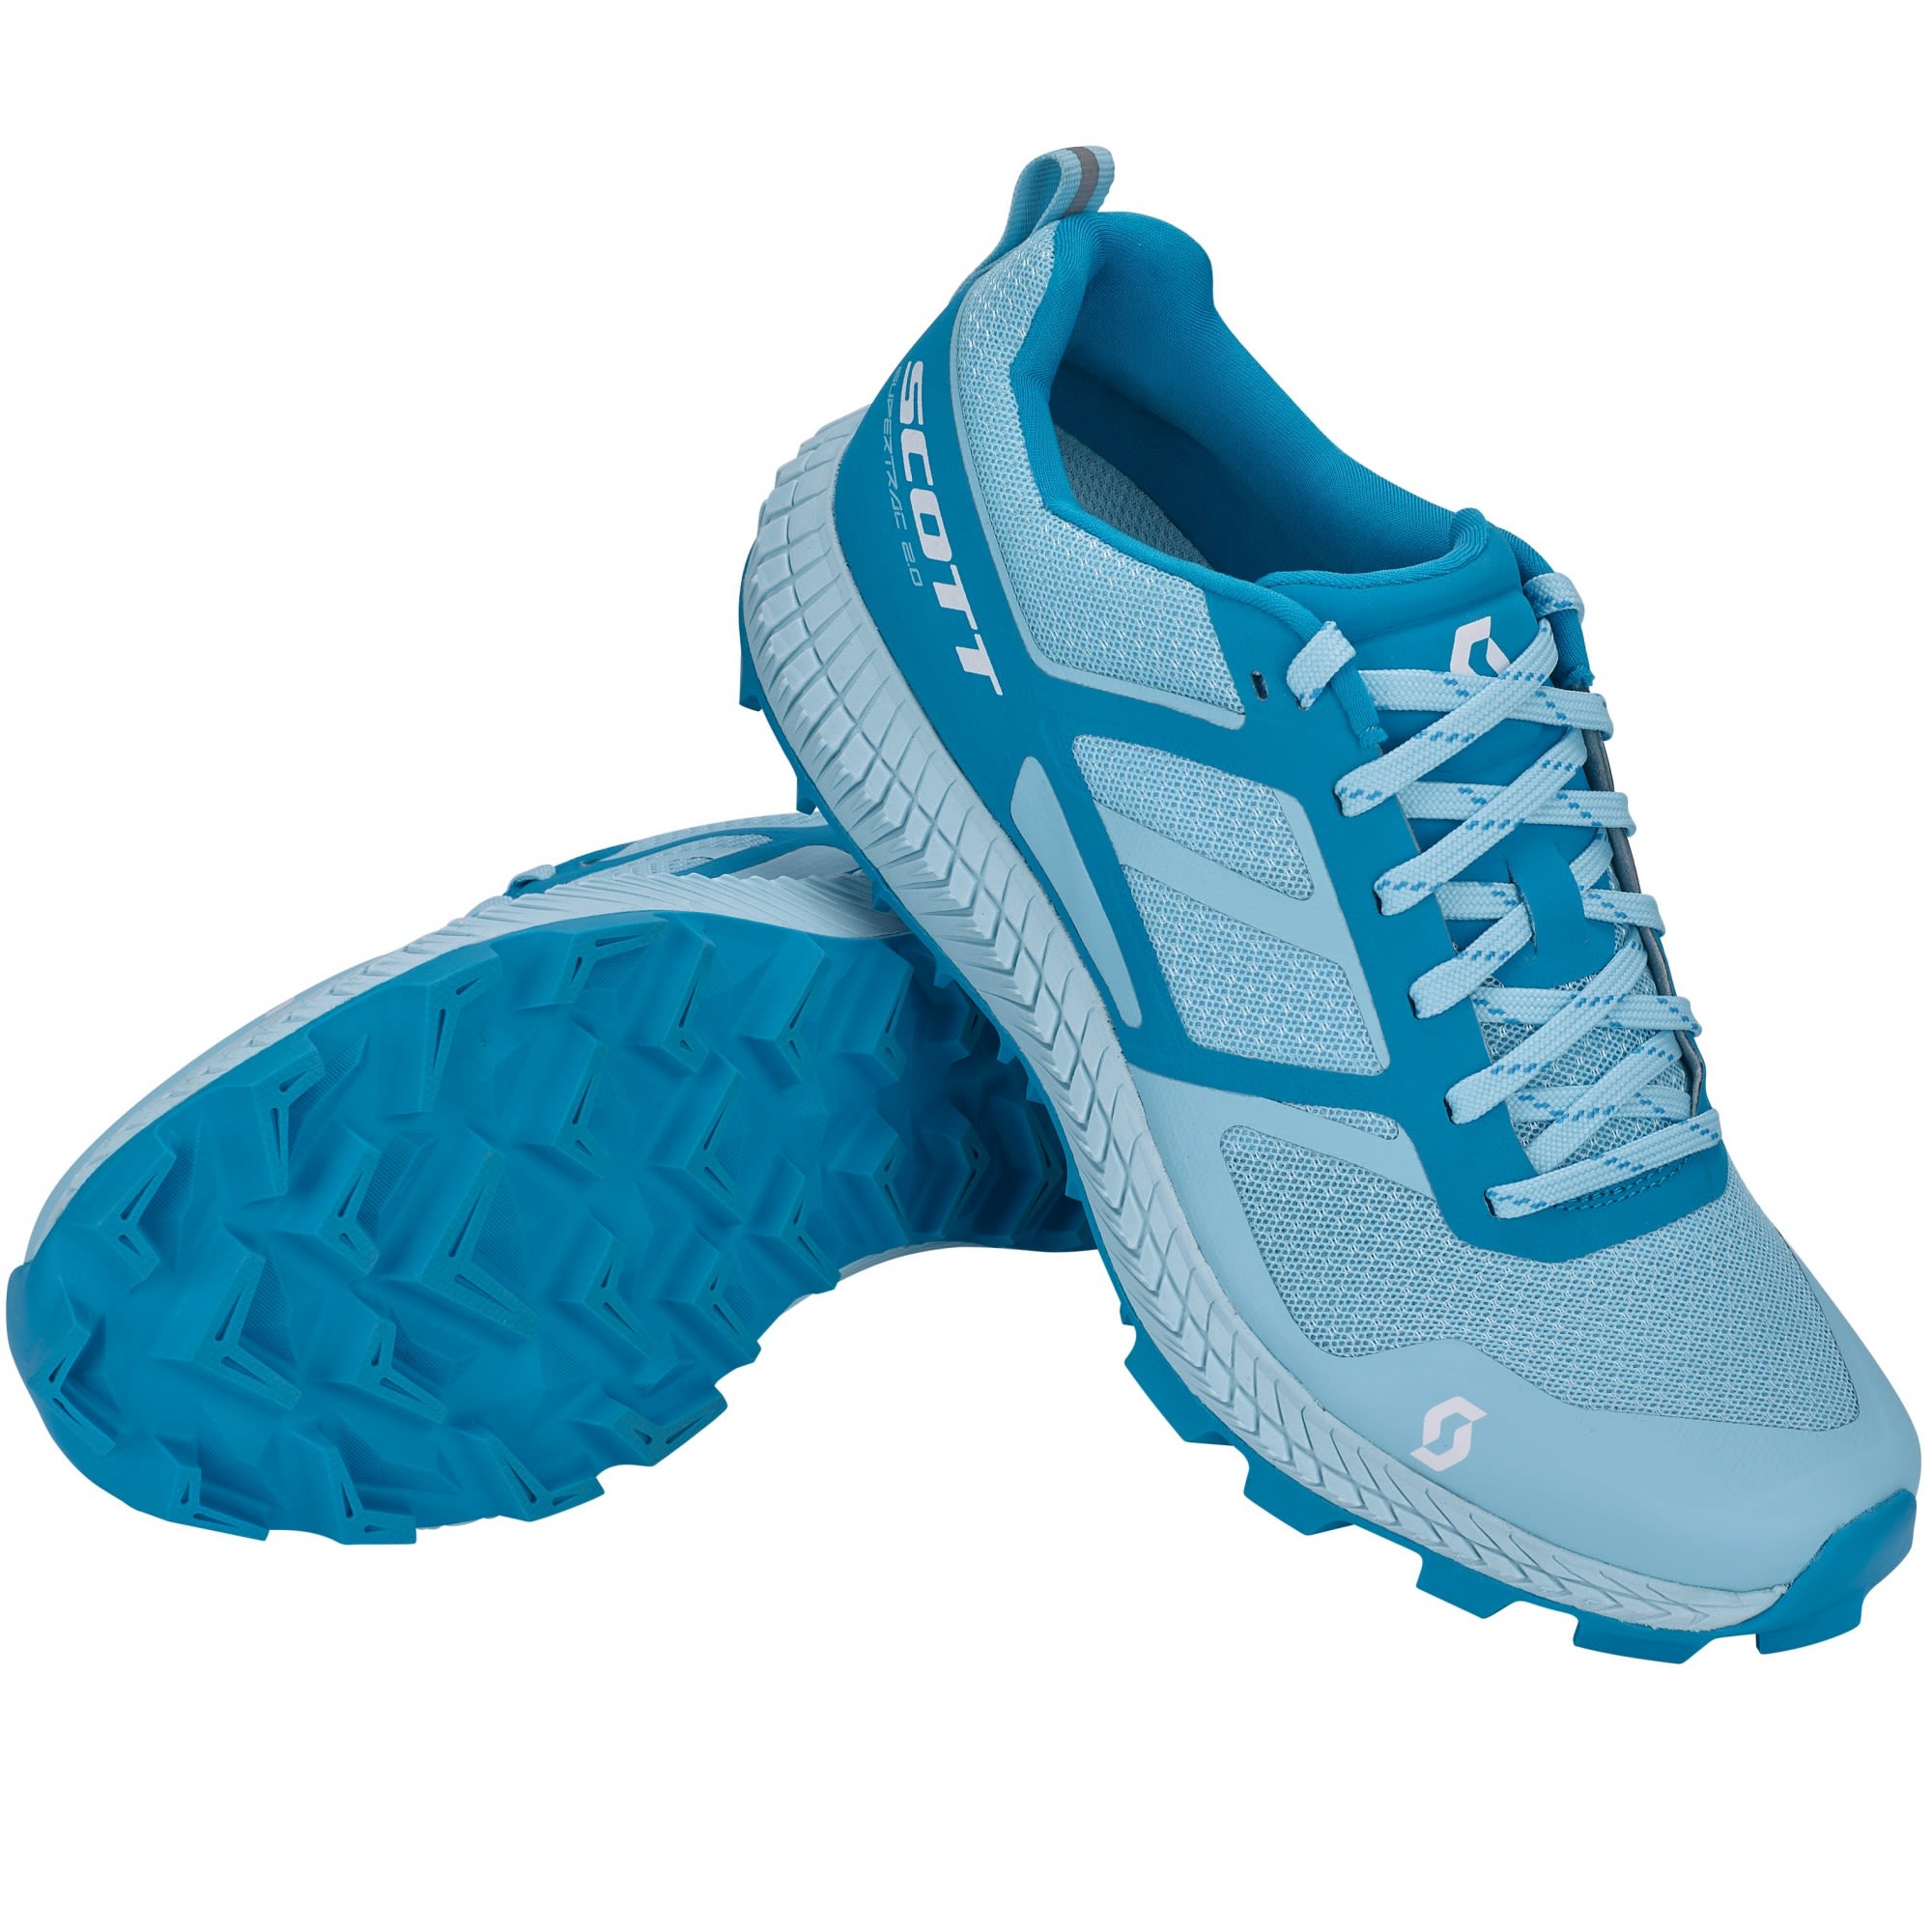 Scott Dynamischer komfortabler Damen Trail Running Schuh Light Blue - Blue